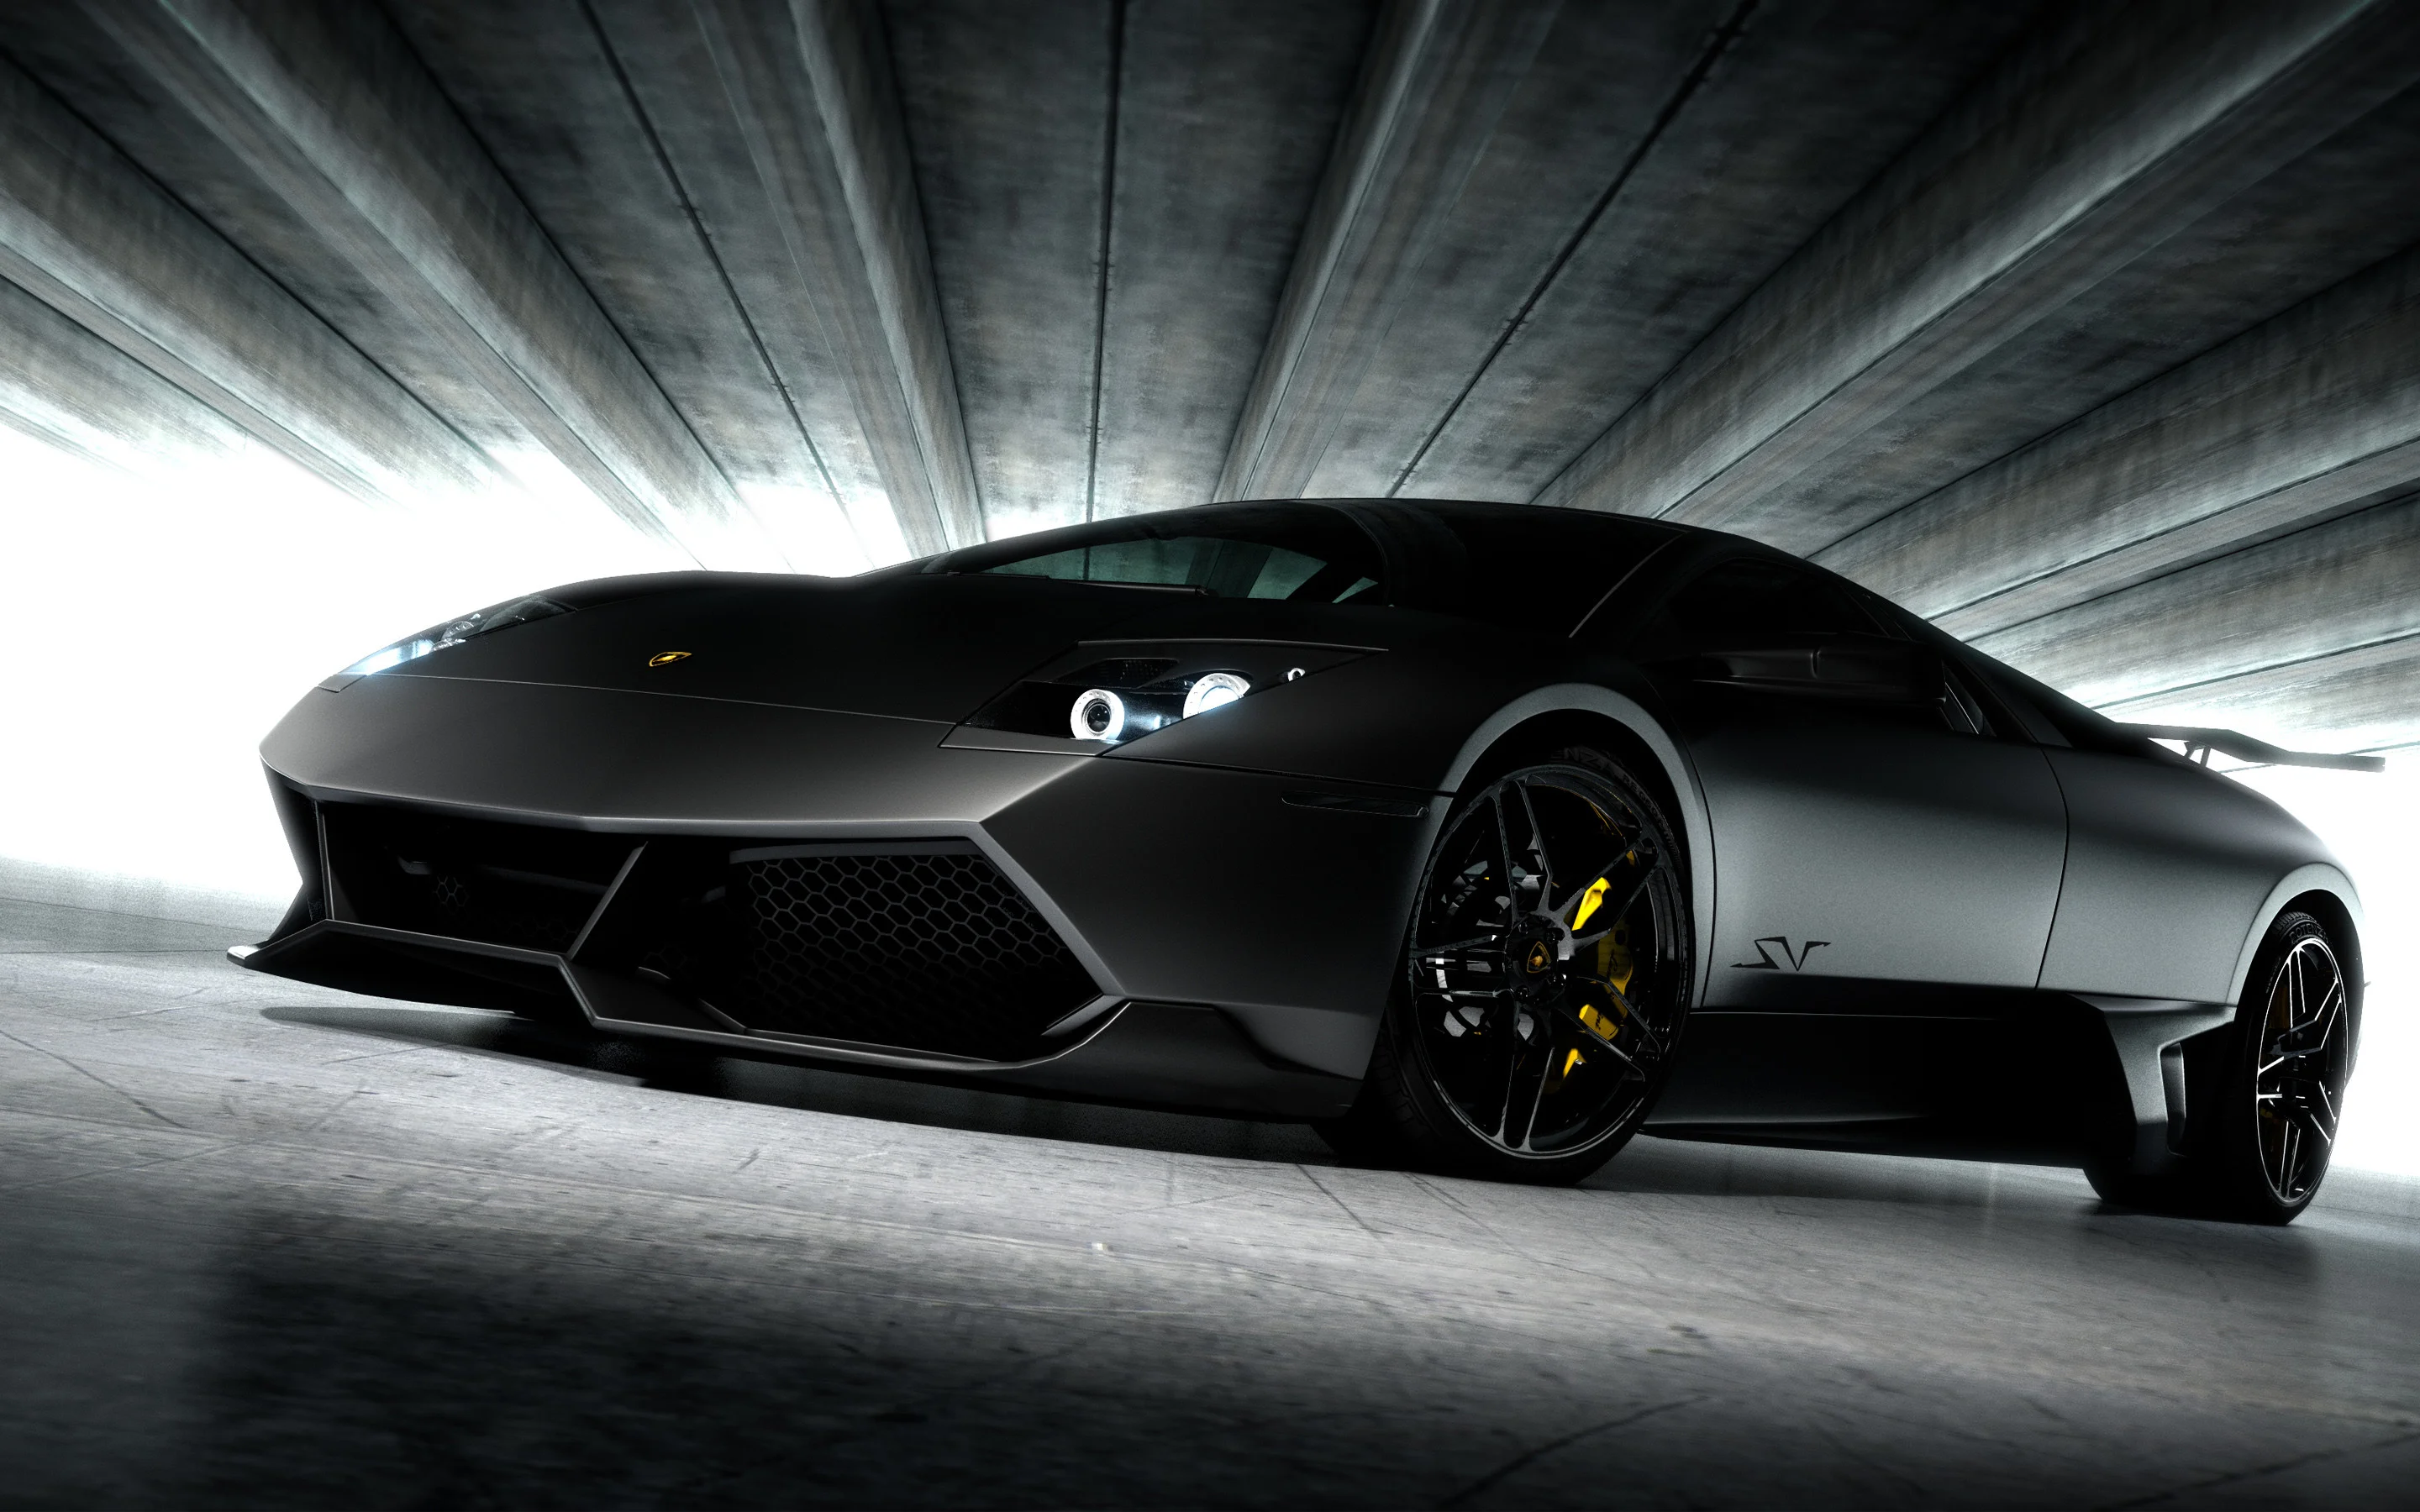 Xe hơi Lamborghini: Không thể phủ nhận sức hút của Lamborghini với sự kết hợp hoàn hảo giữa tốc độ, công nghệ và thiết kế đẹp mắt. Hãy tìm hiểu thêm về siêu xe này qua những hình ảnh chất lượng cao.